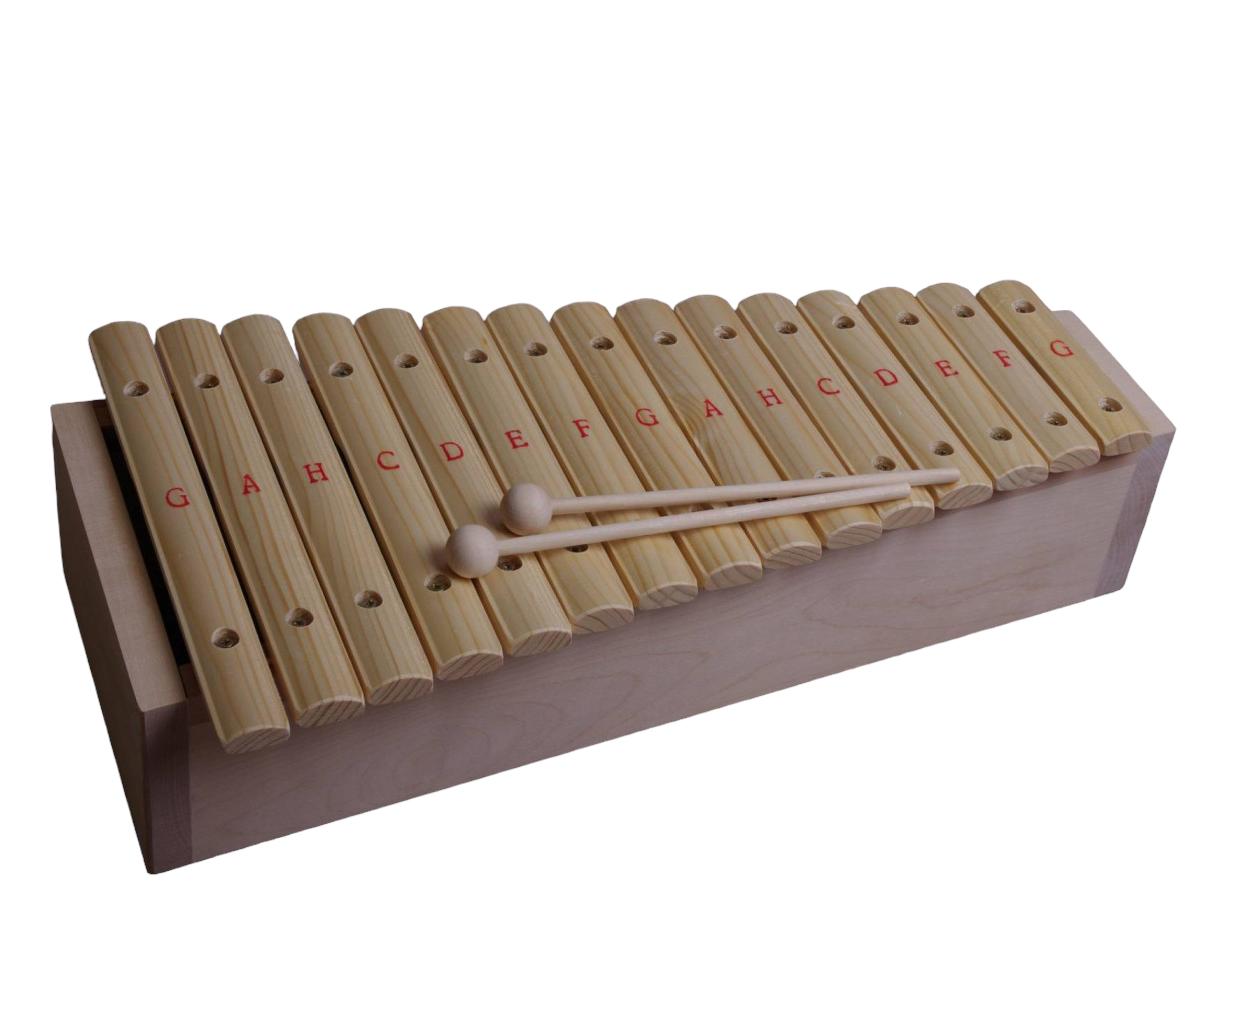 Прочие ударные, перкуссия, народные Мастерская Сереброва К1-КС-09 деревянные звук флейты пикколо музыкальный инструмент раннего образования игрушка в подарок для ребенка baby kid